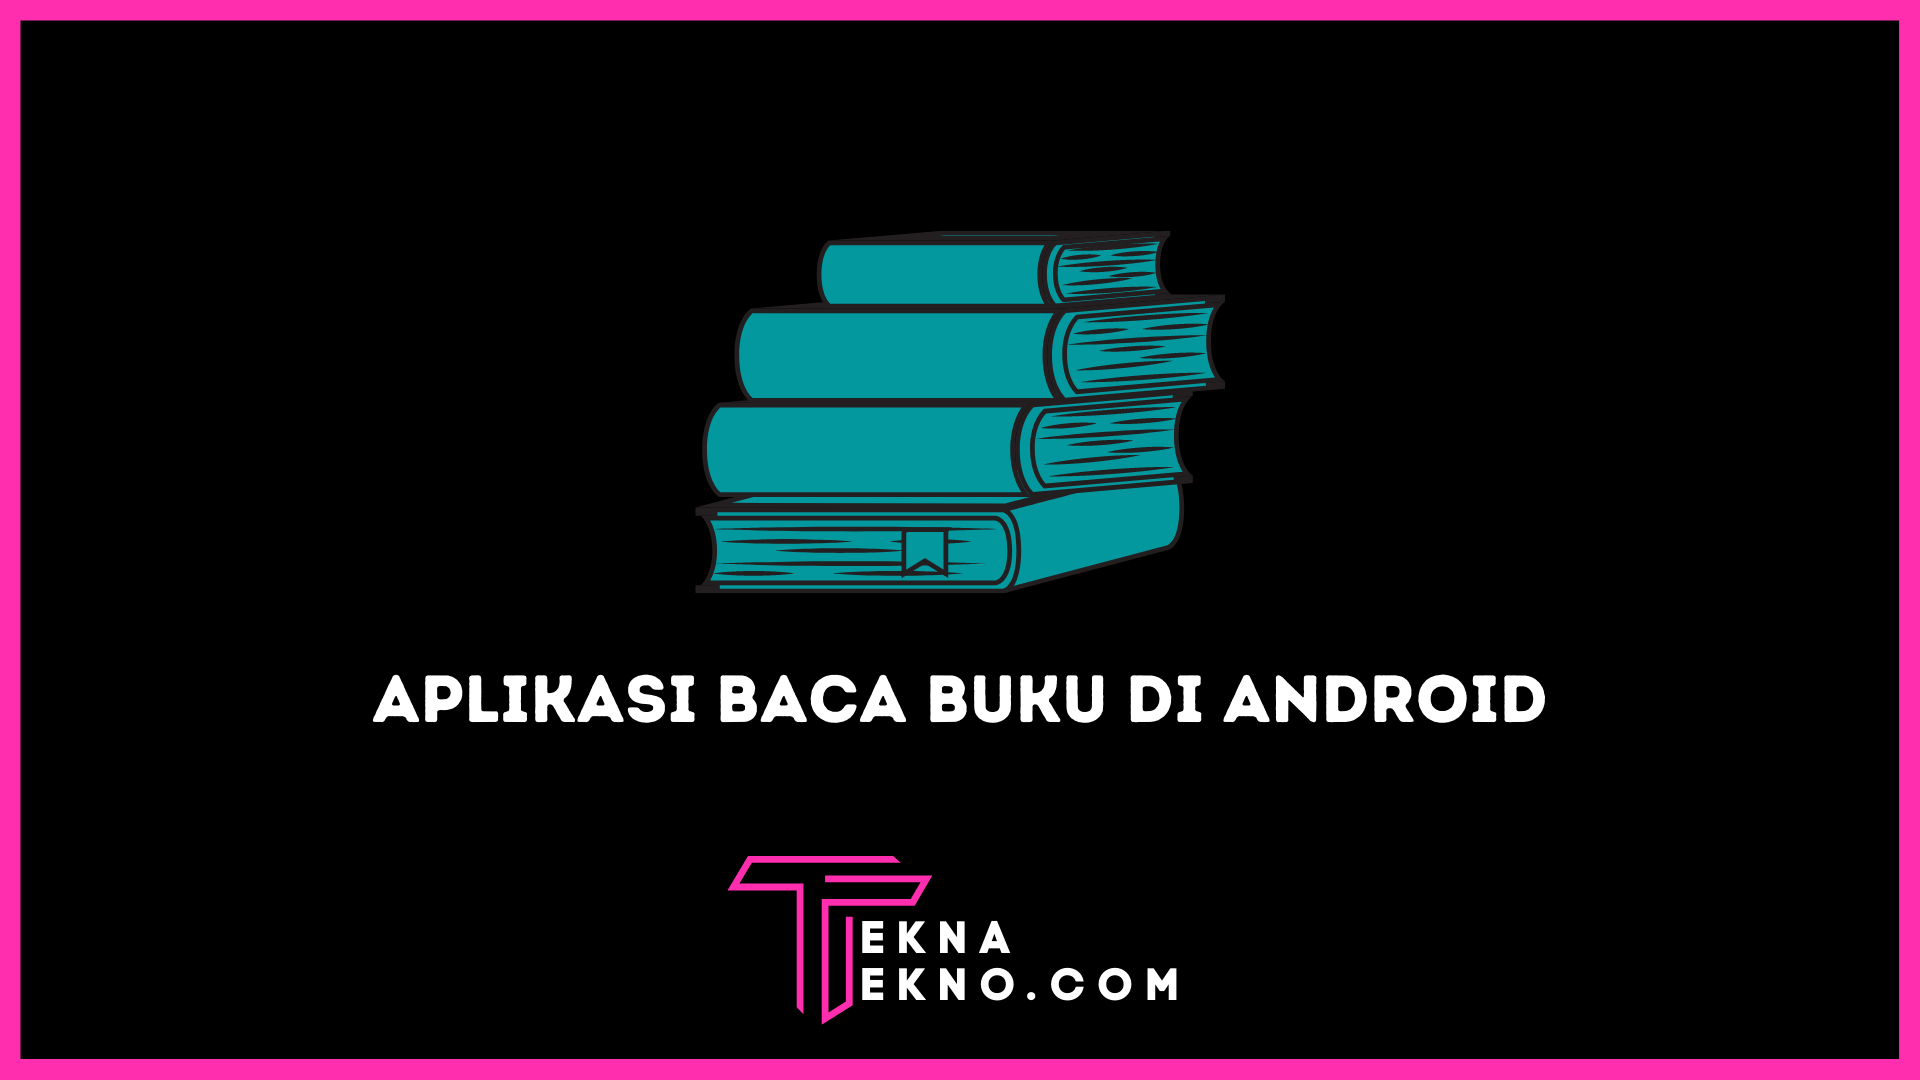 Rekomendasi Aplikasi Baca Buku Gratis di Android